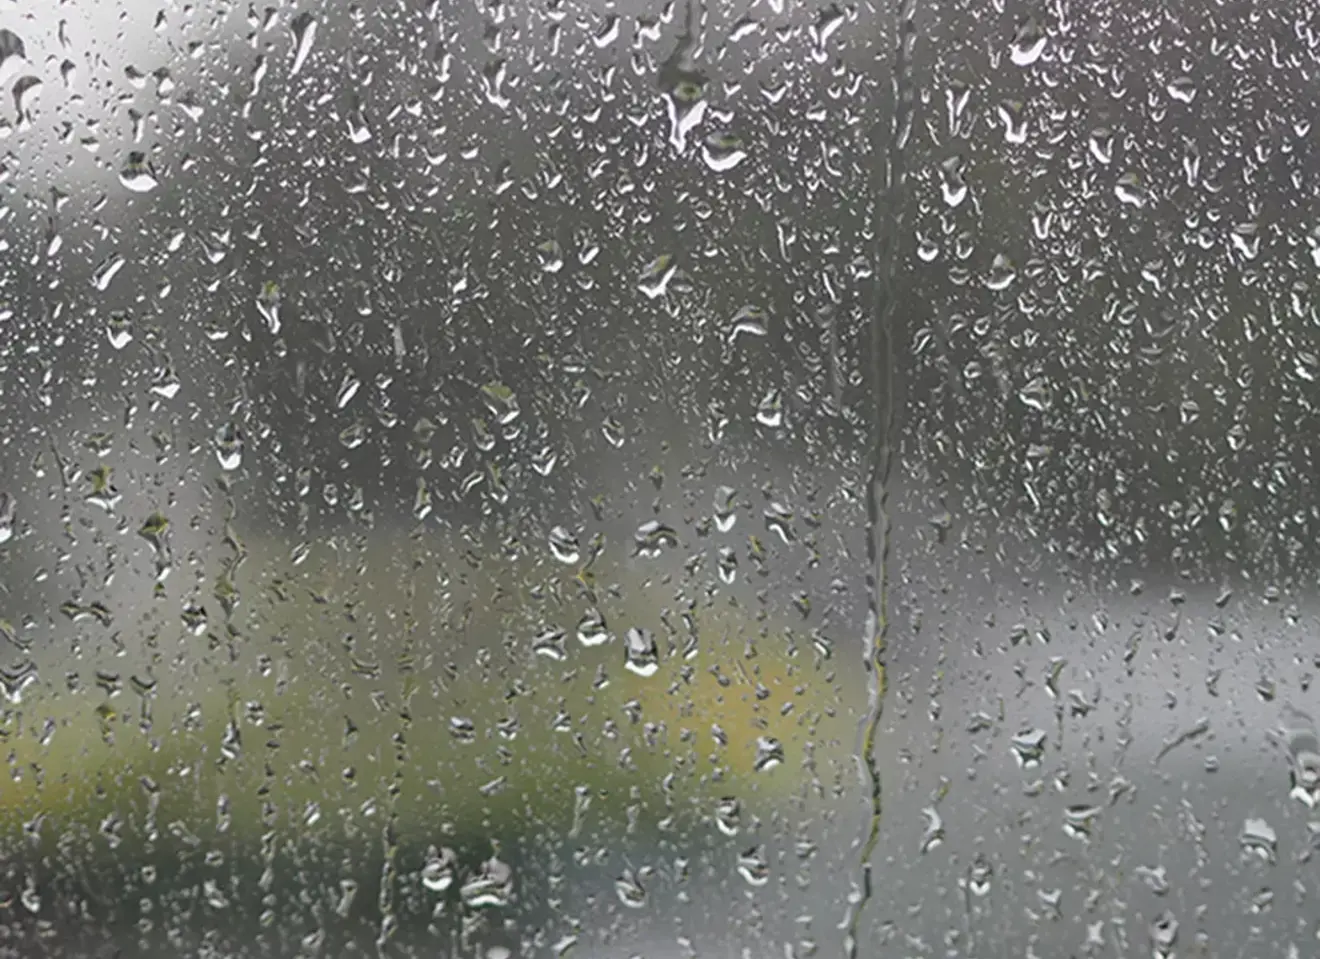 regn på vindusglass